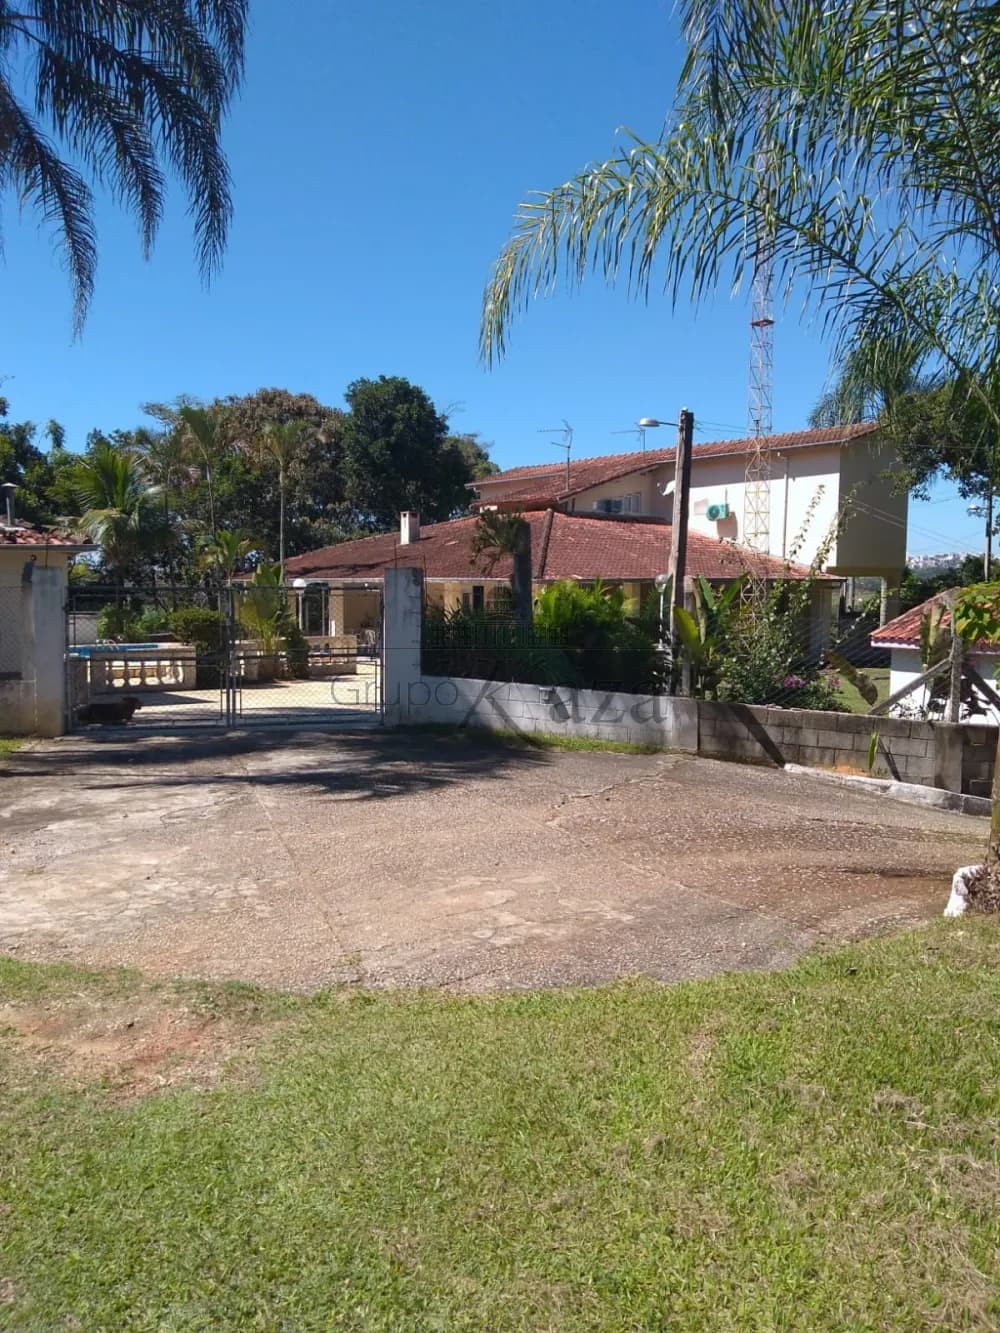 Foto 15 de Rural Chácara em Condomínio Residencial Jaguari - Área 5, São José dos Campos - imagem 15